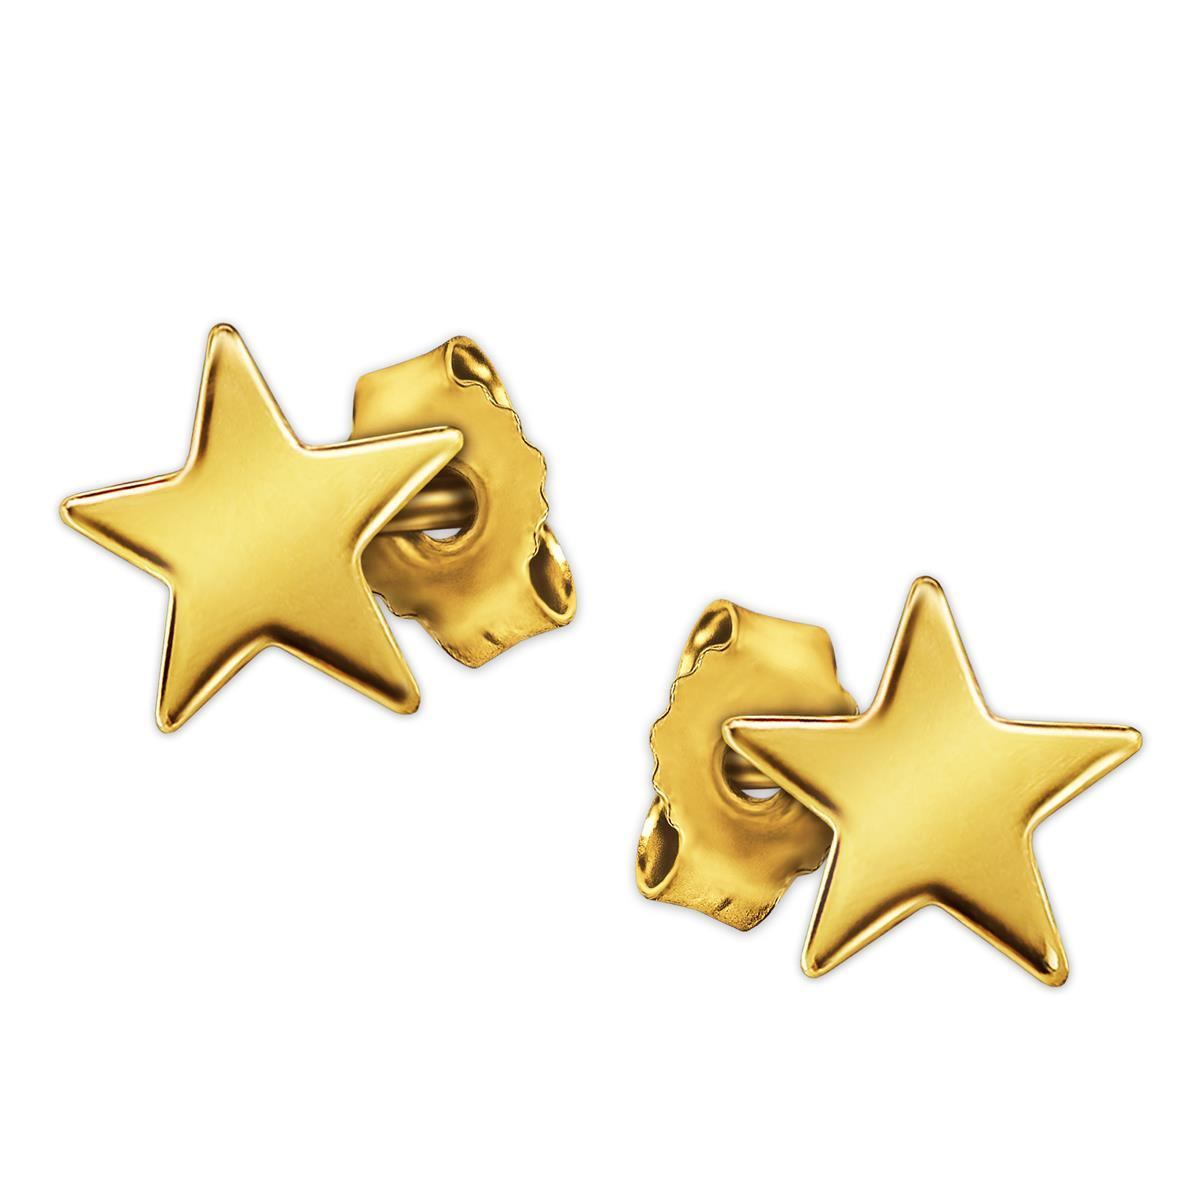 Goldene kleine Ohrstecker Stern 5 mm schlicht und hochglänzend poliert 333 GOLD 8 KARAT